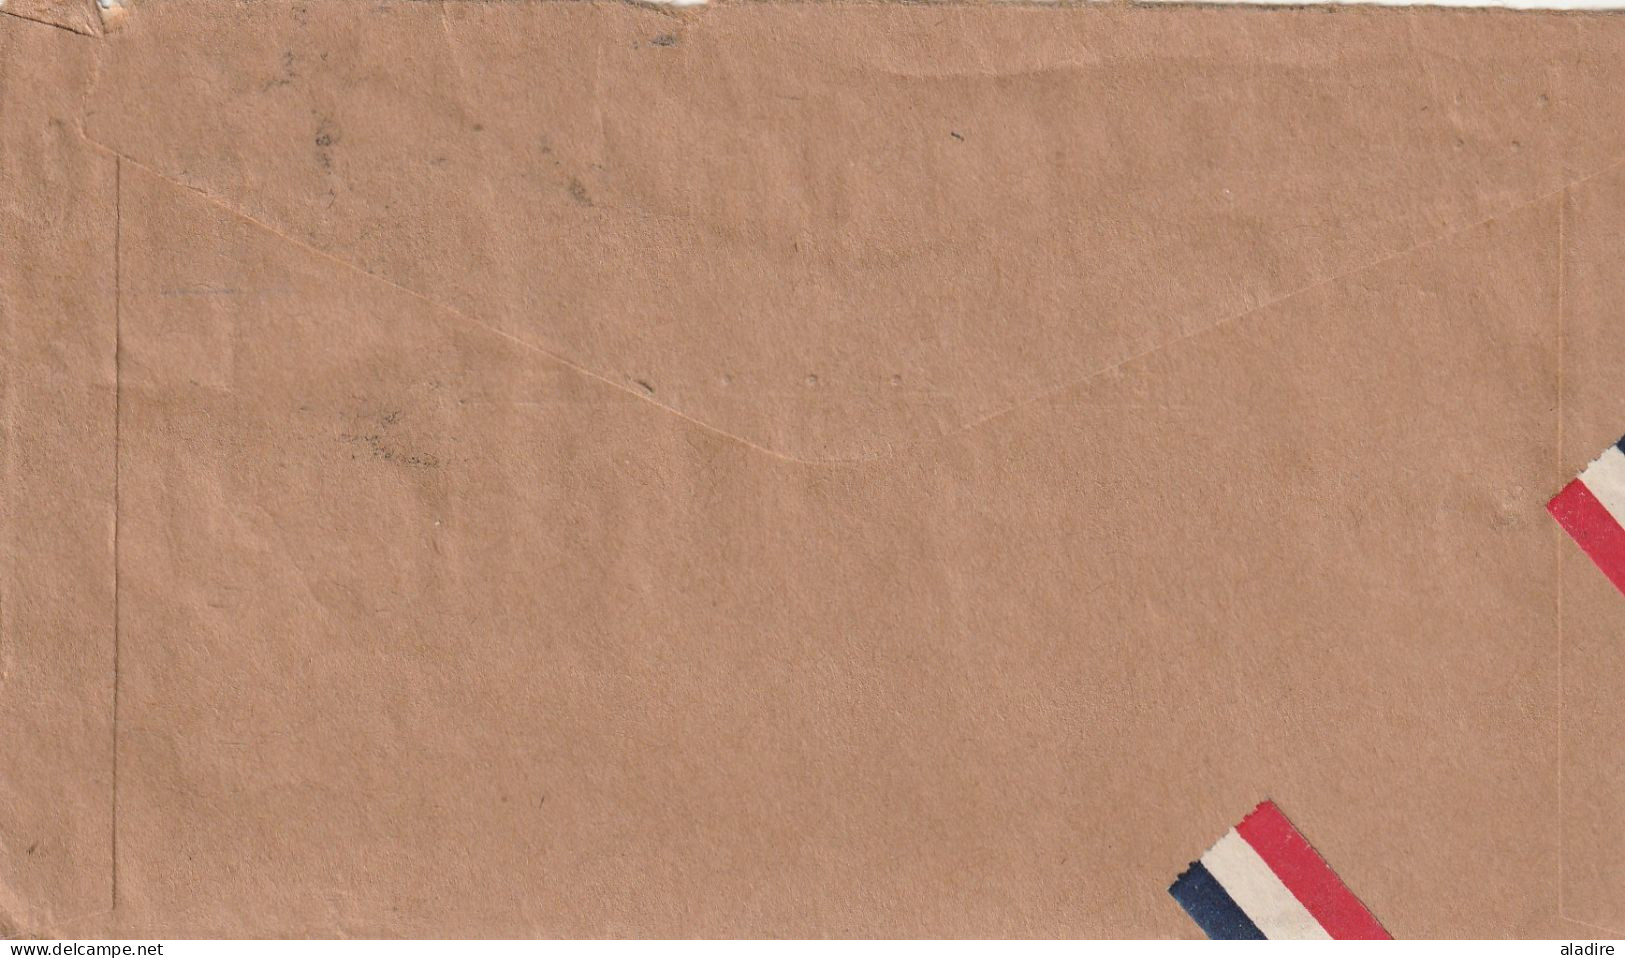 HAITI - 2 lettres maritimes par voie anglaise (1861 et 1863) et deux lettres par avion vers les USA (1930 et 1934)